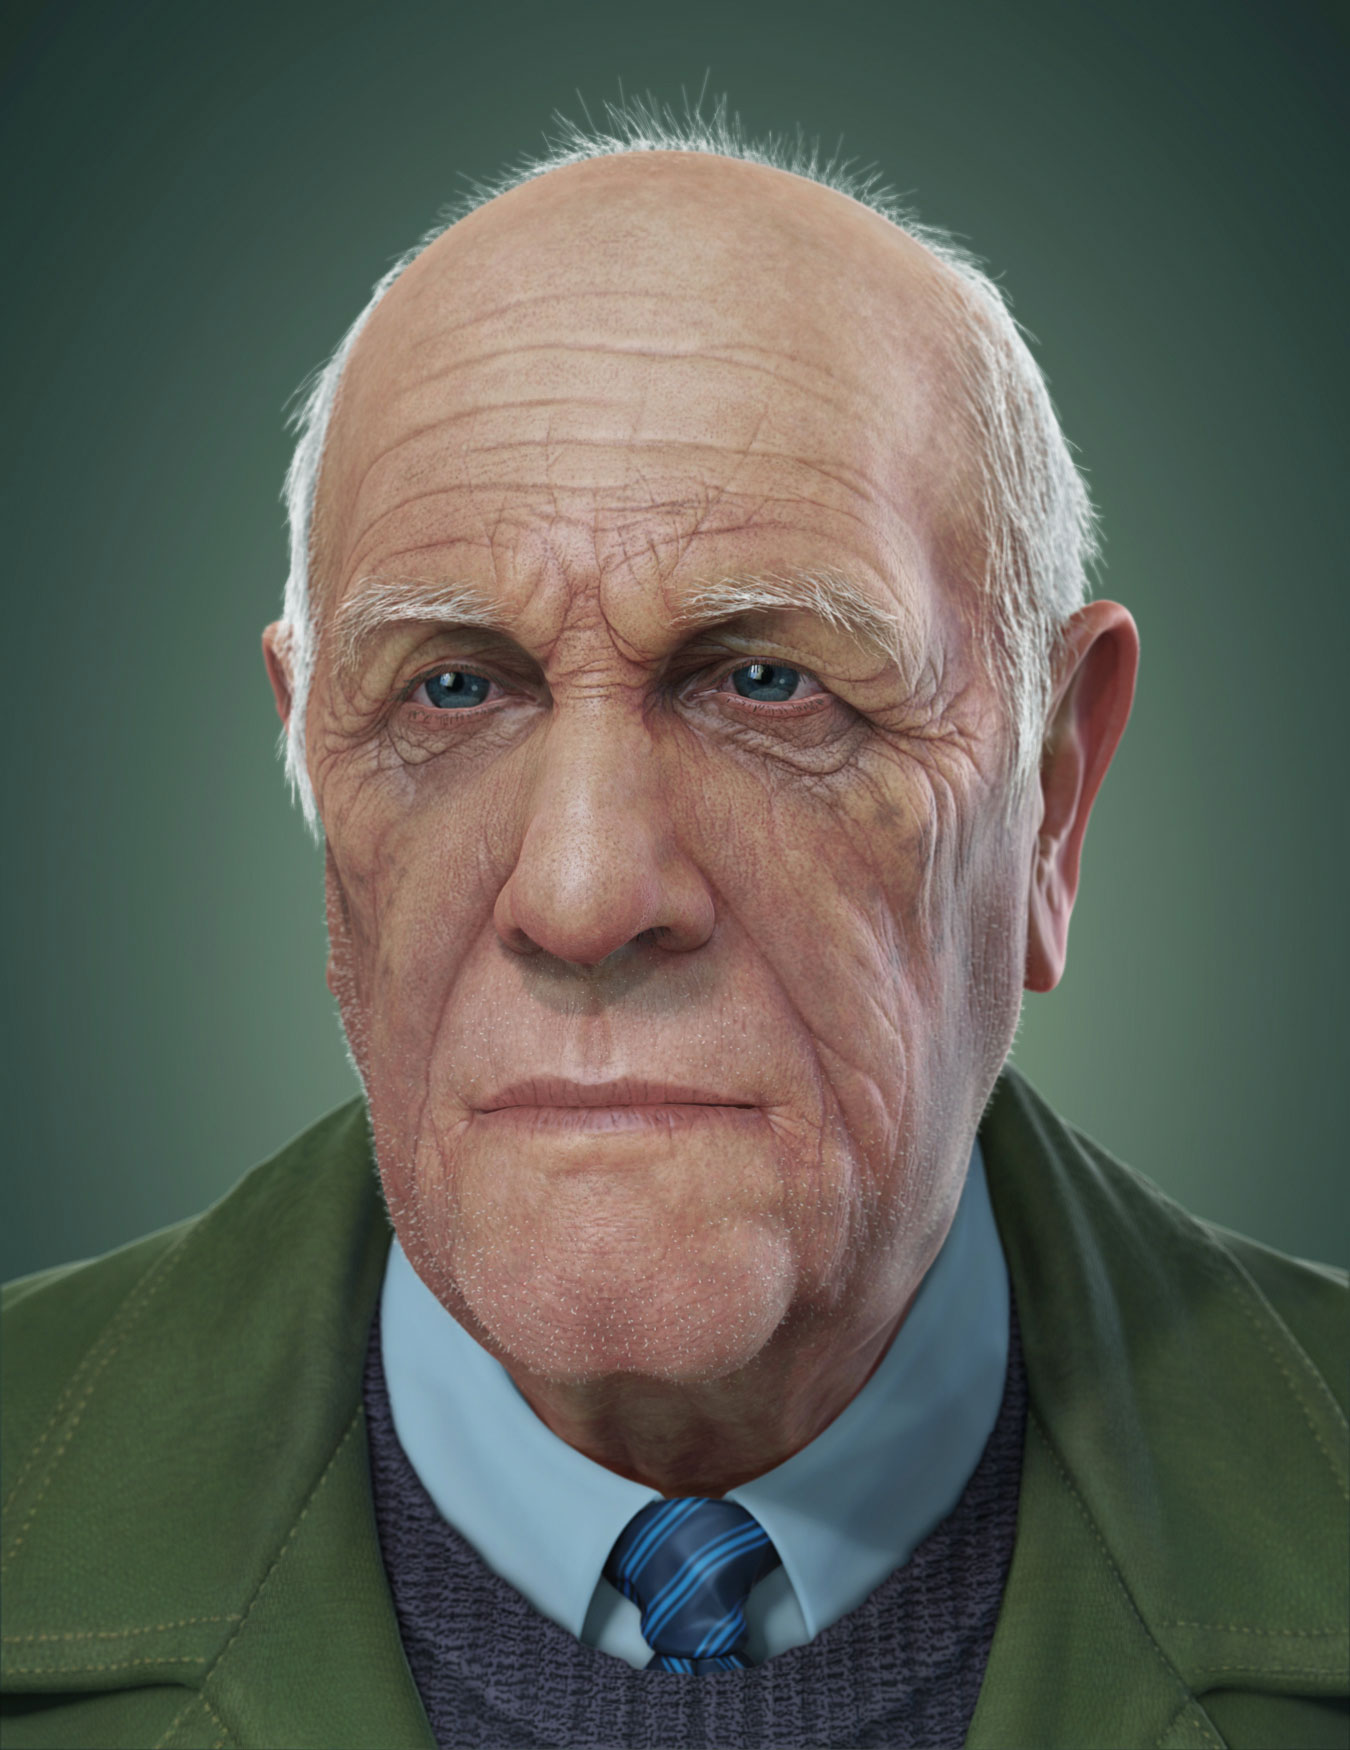 Old man face. Old man. Зеленоглазый старичок. Угрюмый дед. Пожилой мужчина 3д модель.